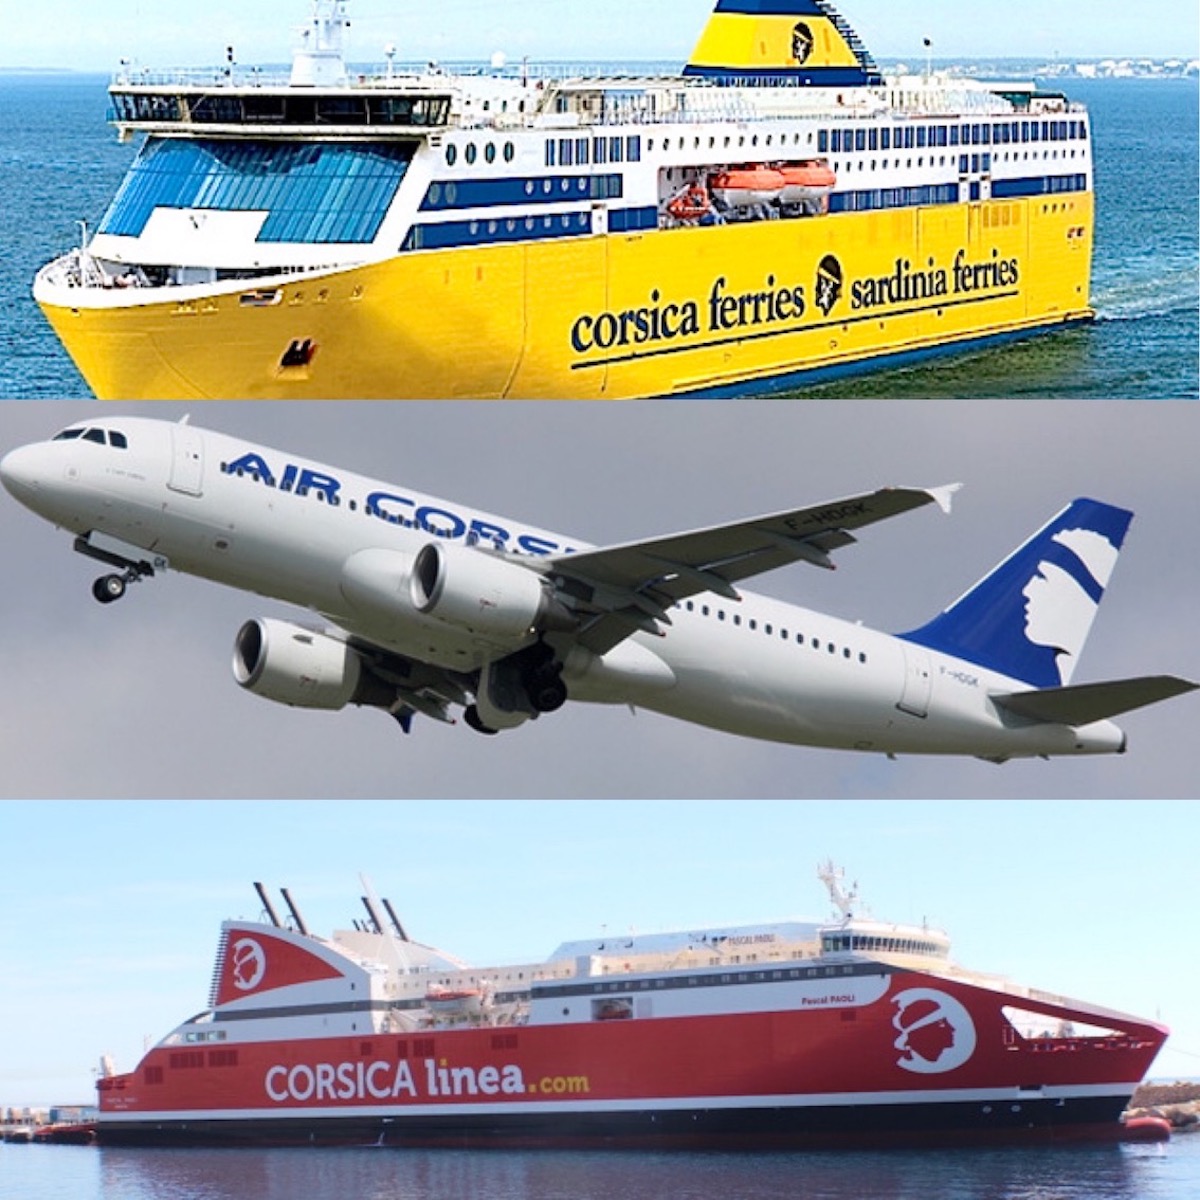 Transports vers la Corse : un écroulement des réservations pour les vacances scolaires de printemps  